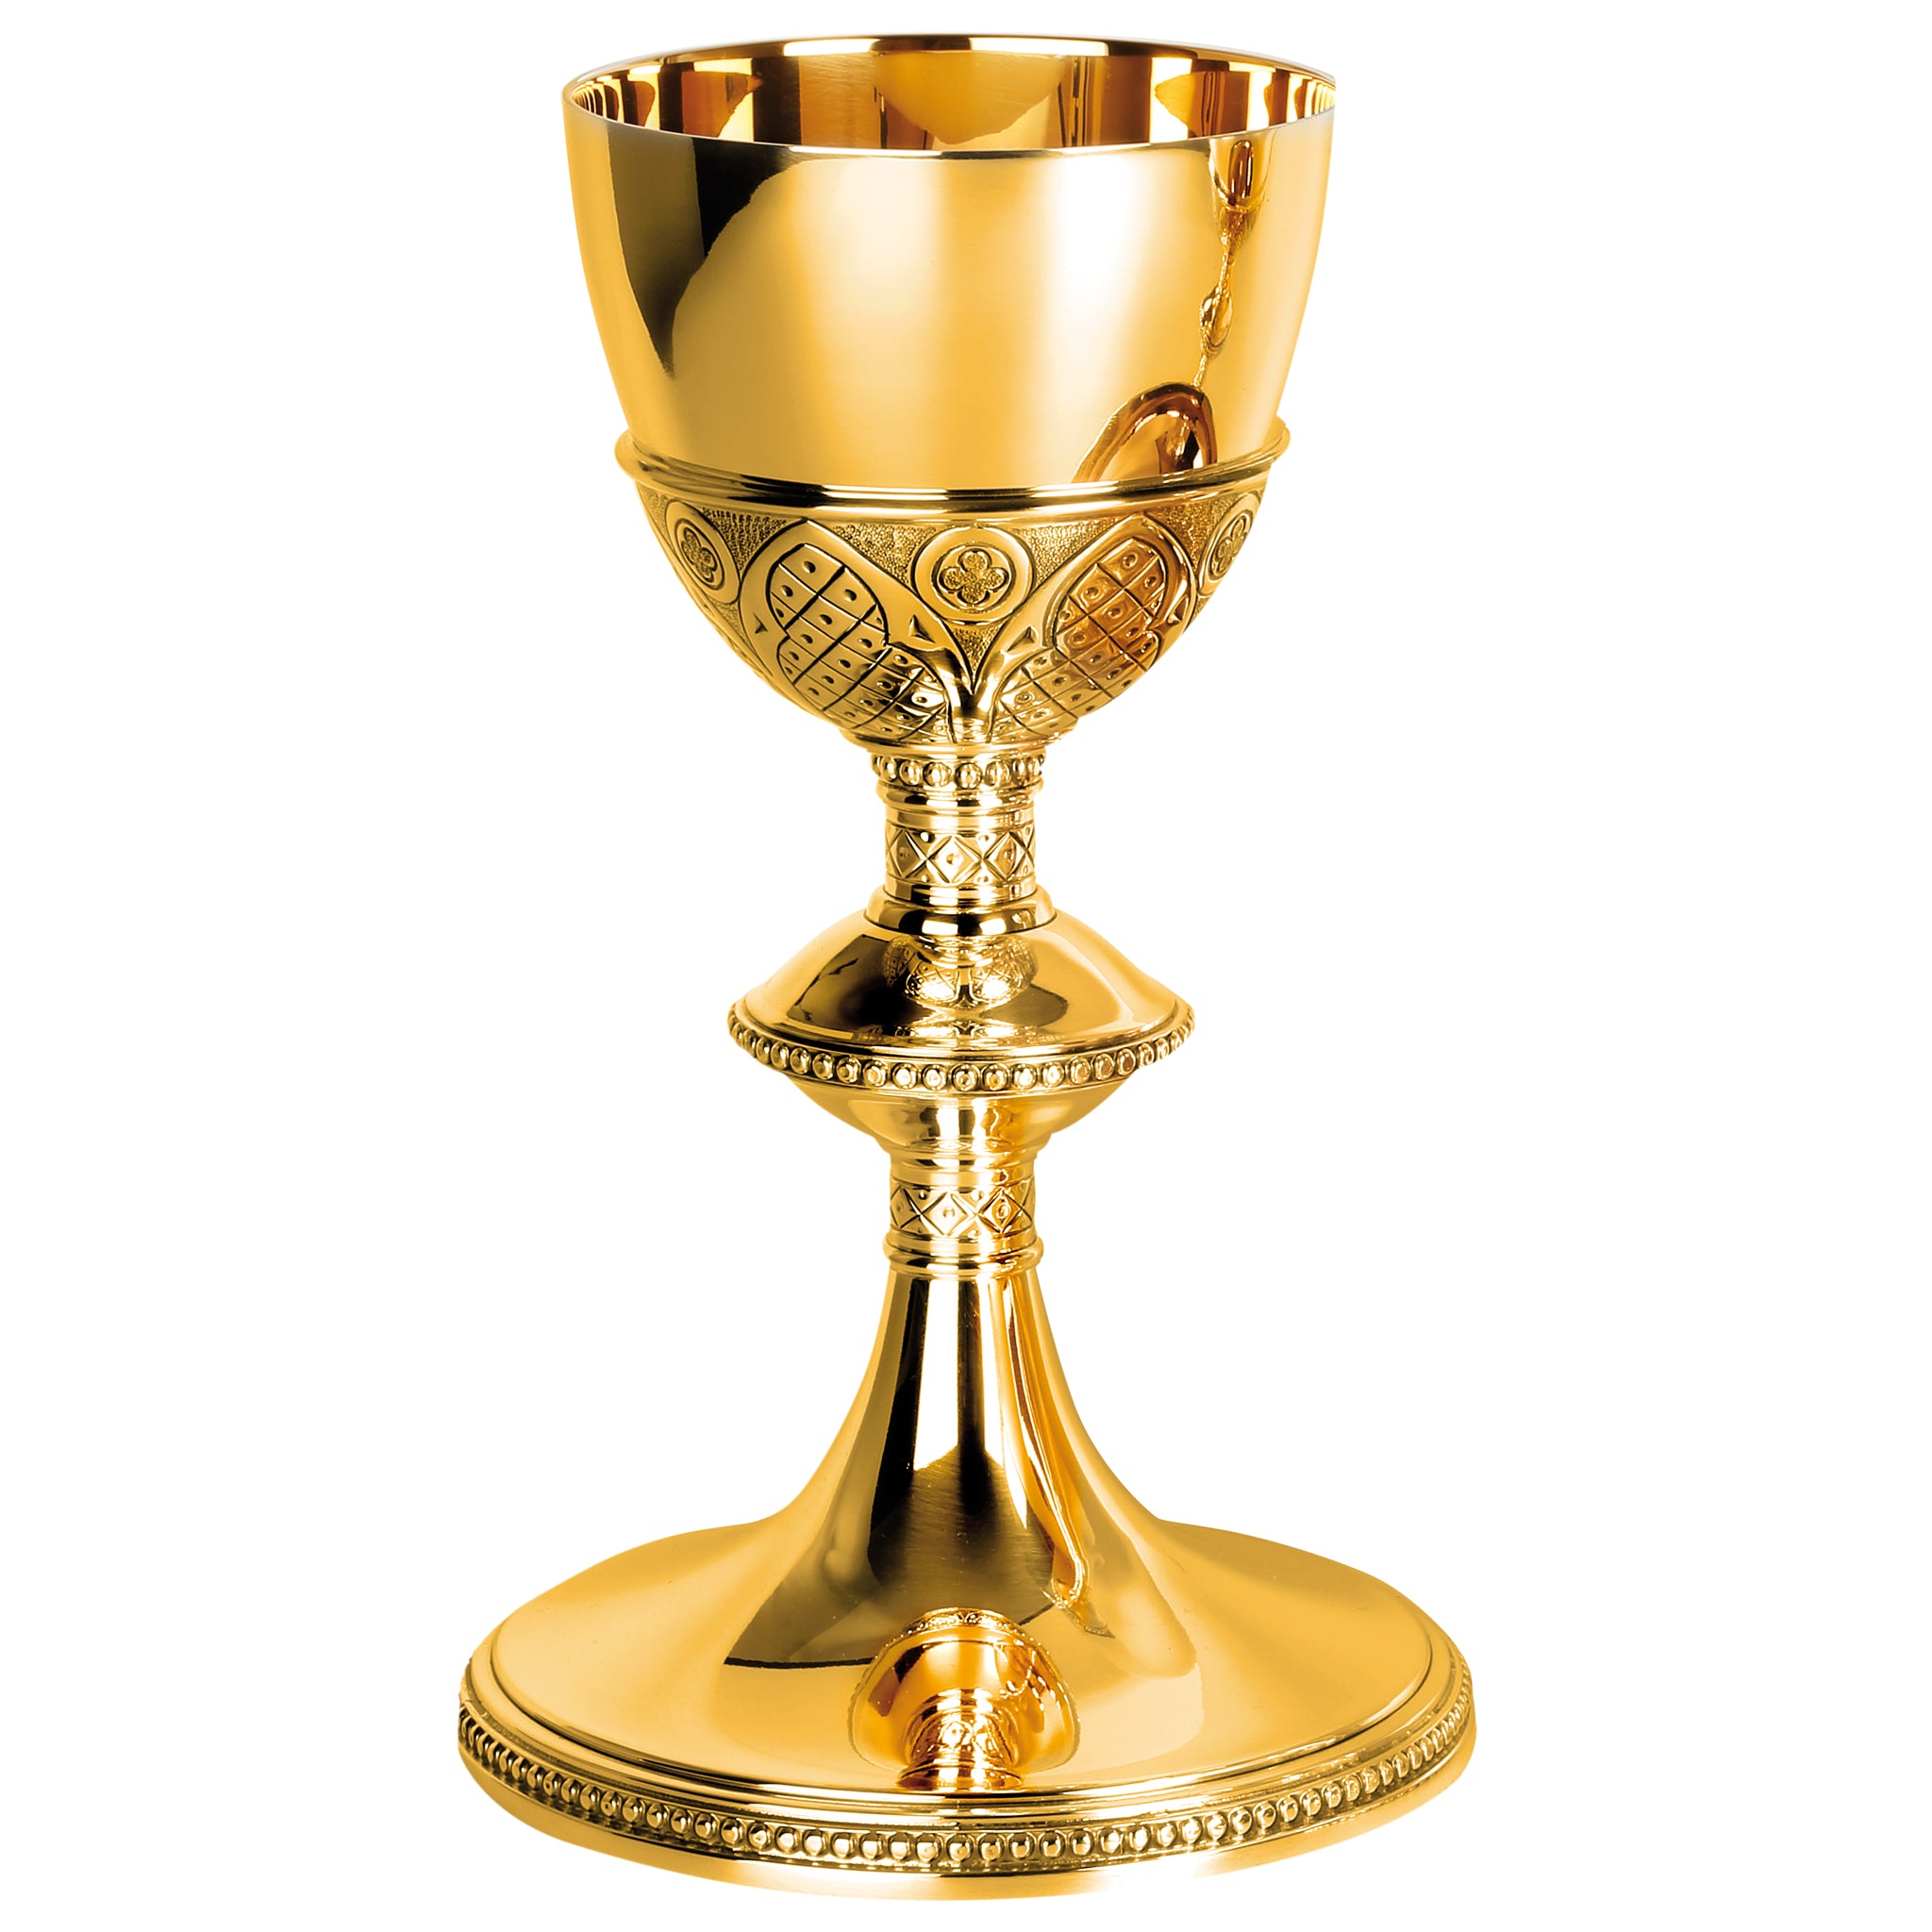 Gold Chalice | Gothic design | 17 oz